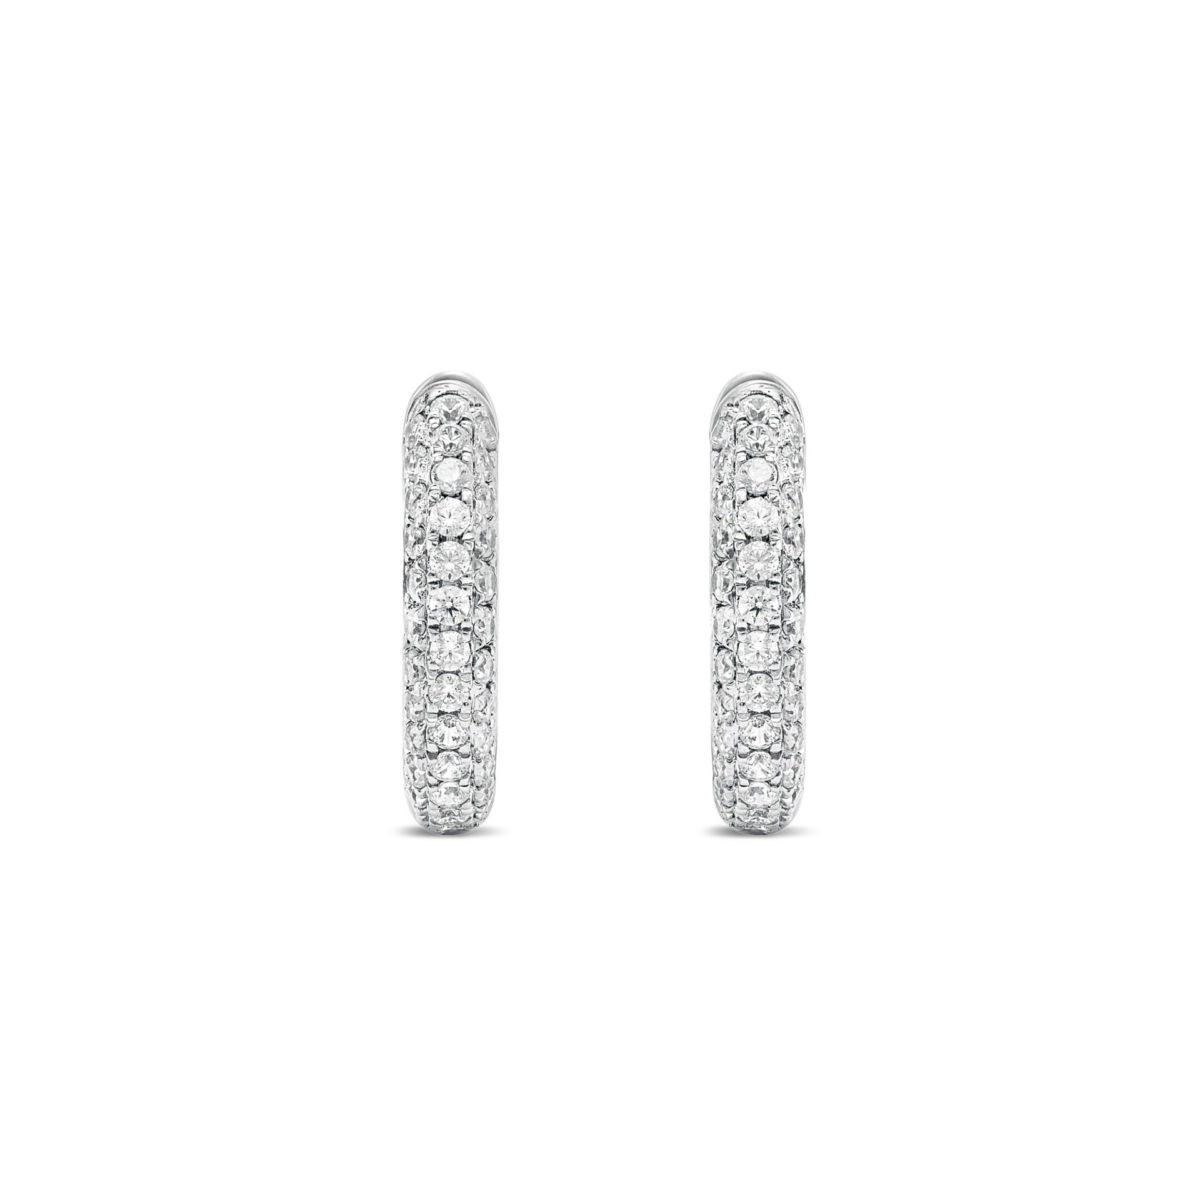 1ct Diamond Pave Hoop Earrings